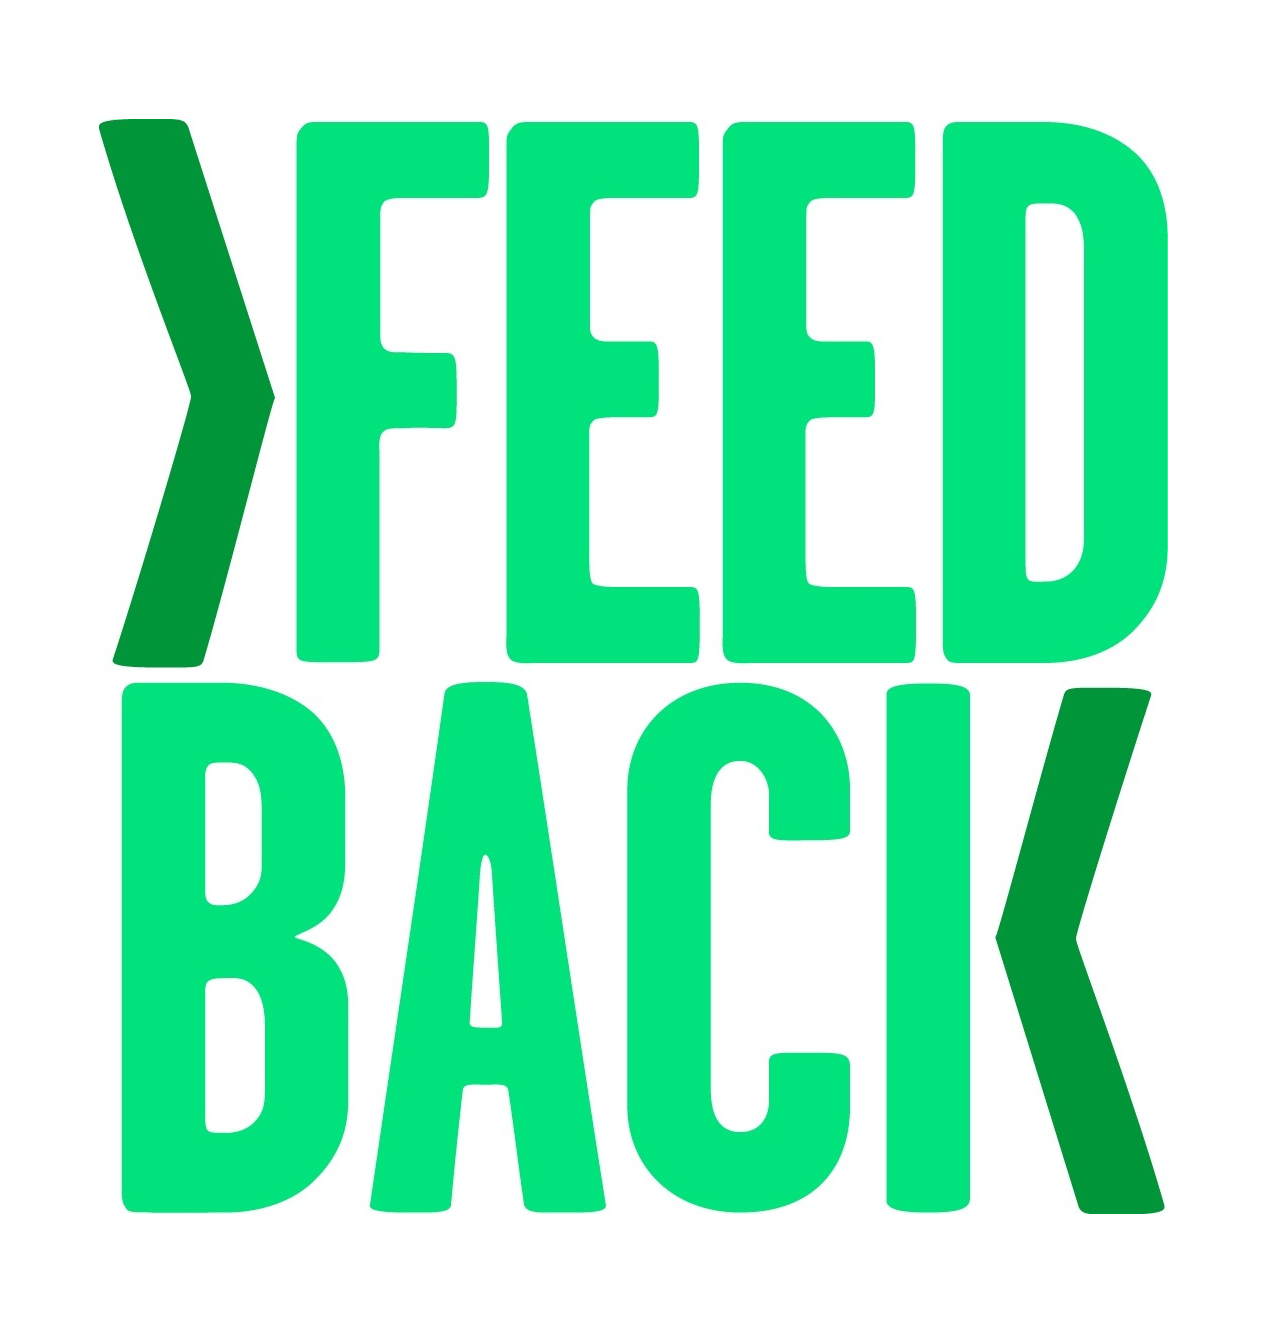 Feedback Logo